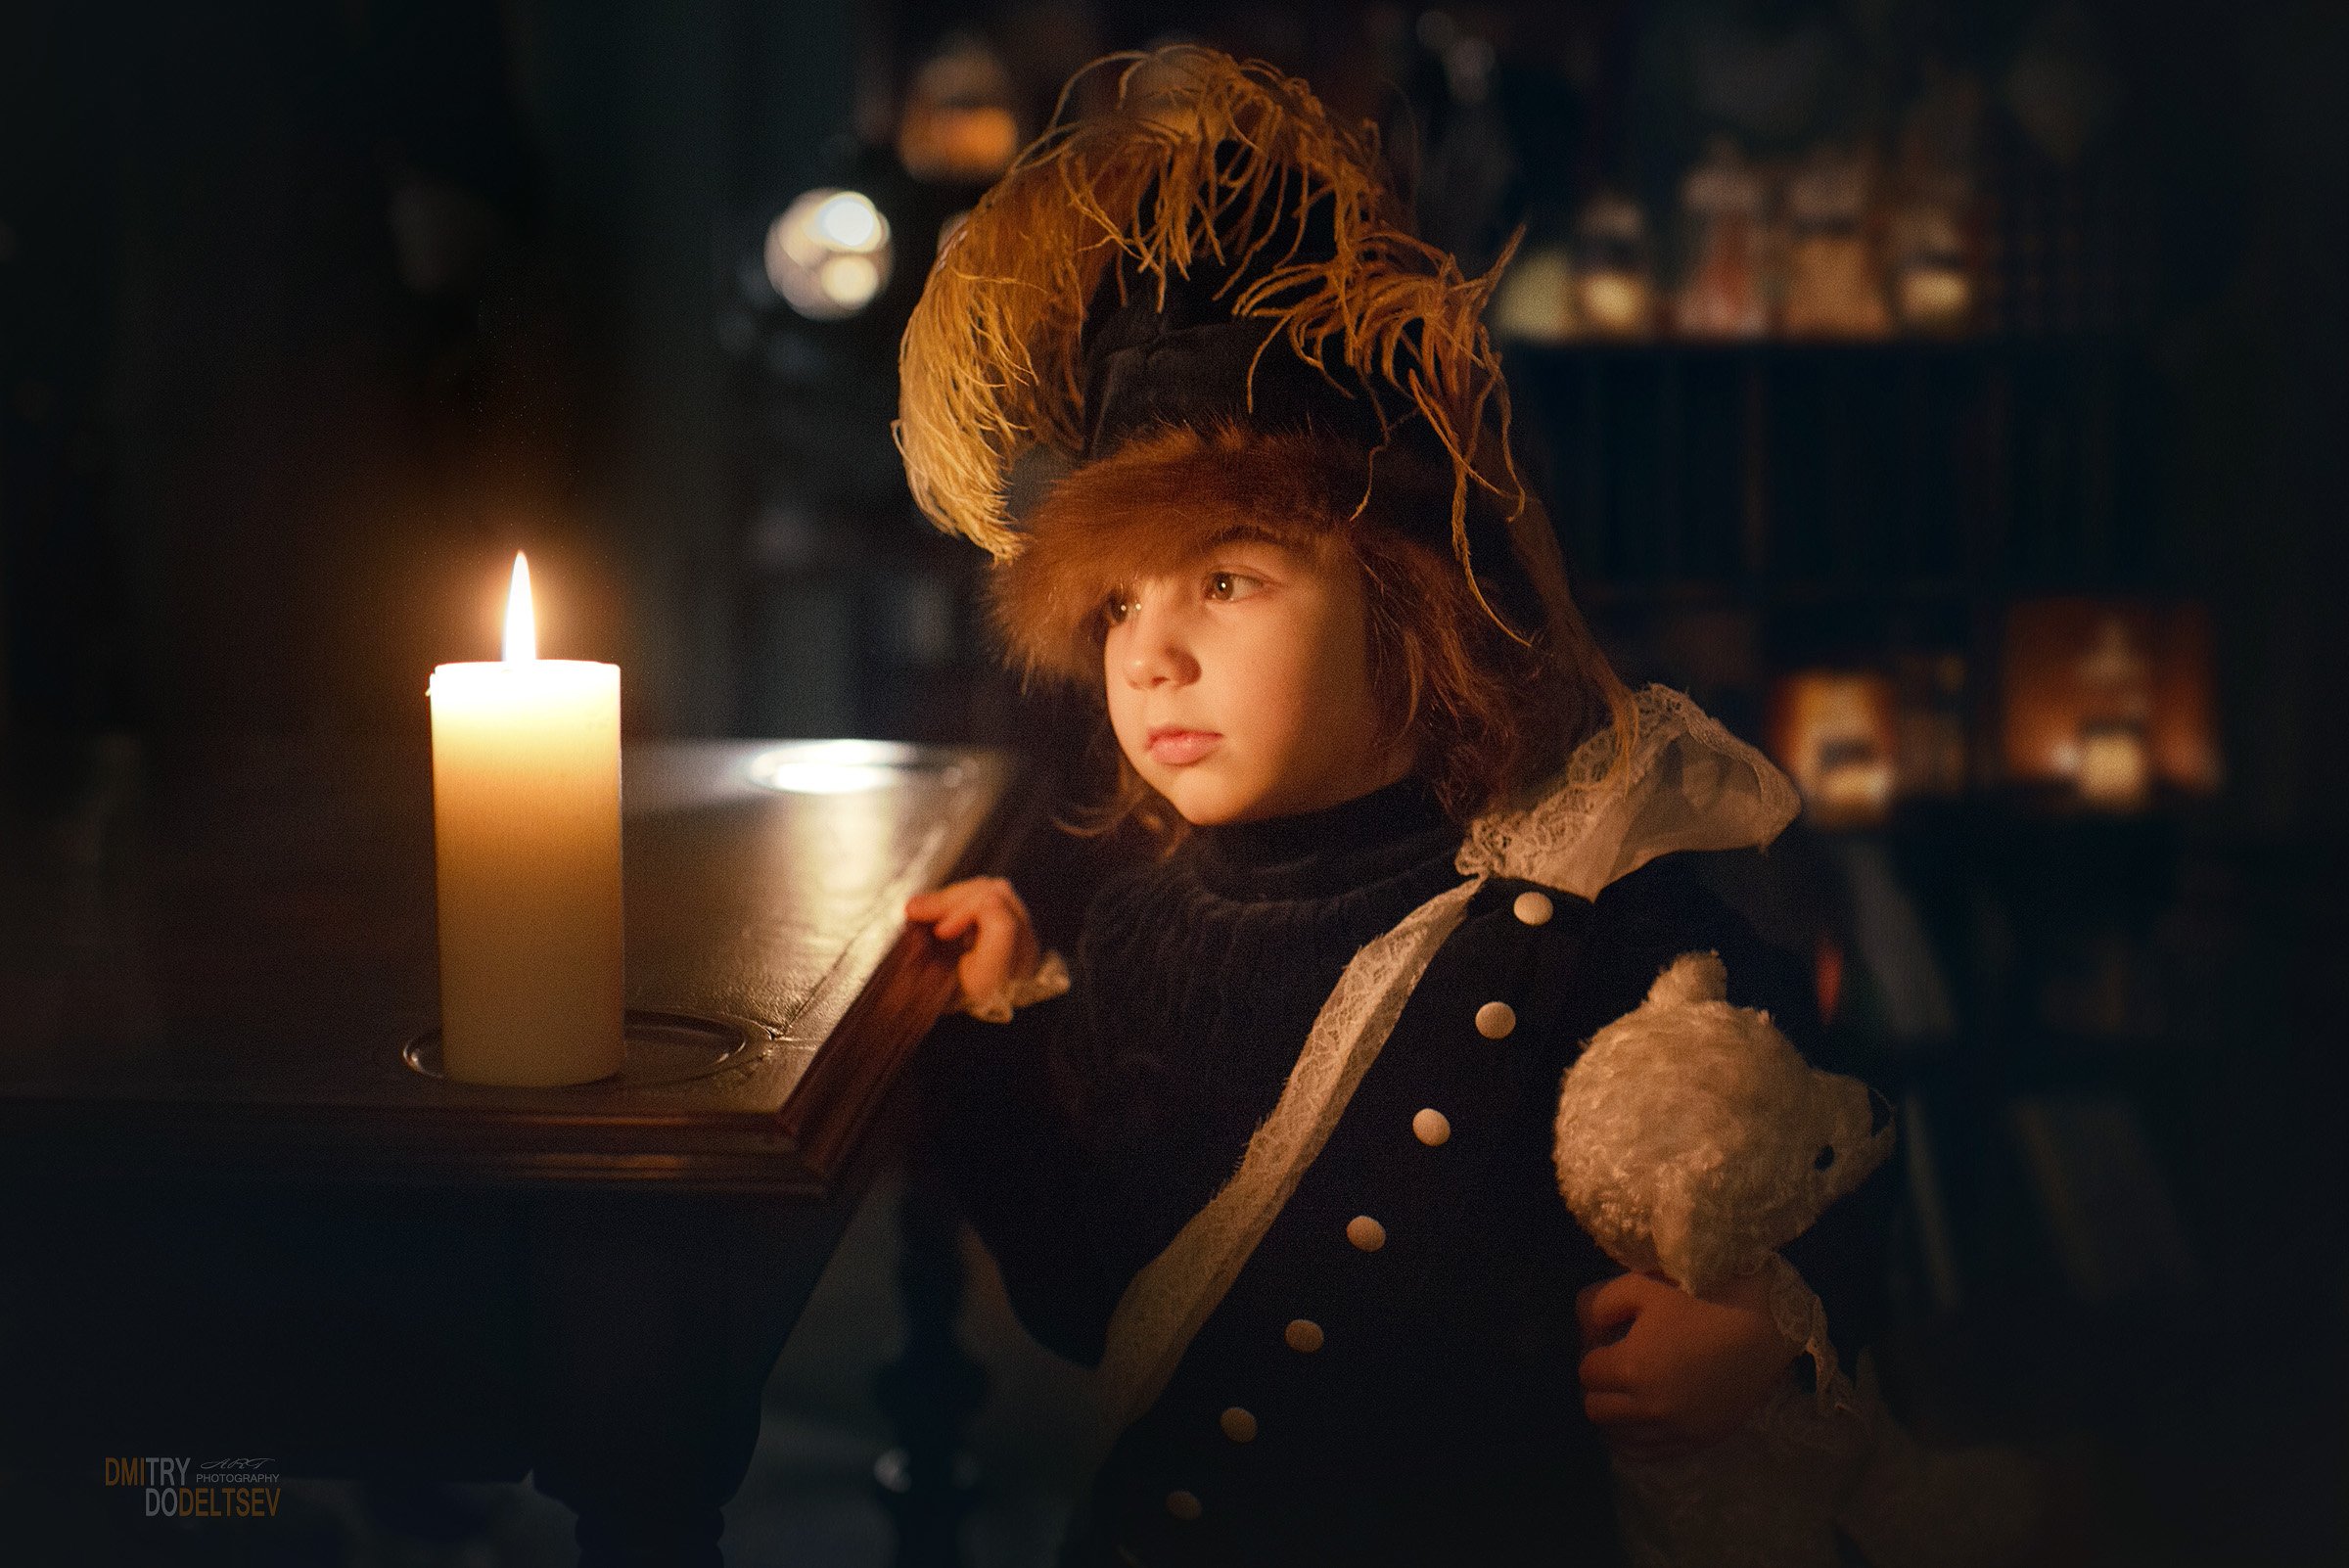 портрет, девочка, свеча, интерьер, темнота, свет свечи, игрушка, мишка, ребенок, Дмитрий Додельцев